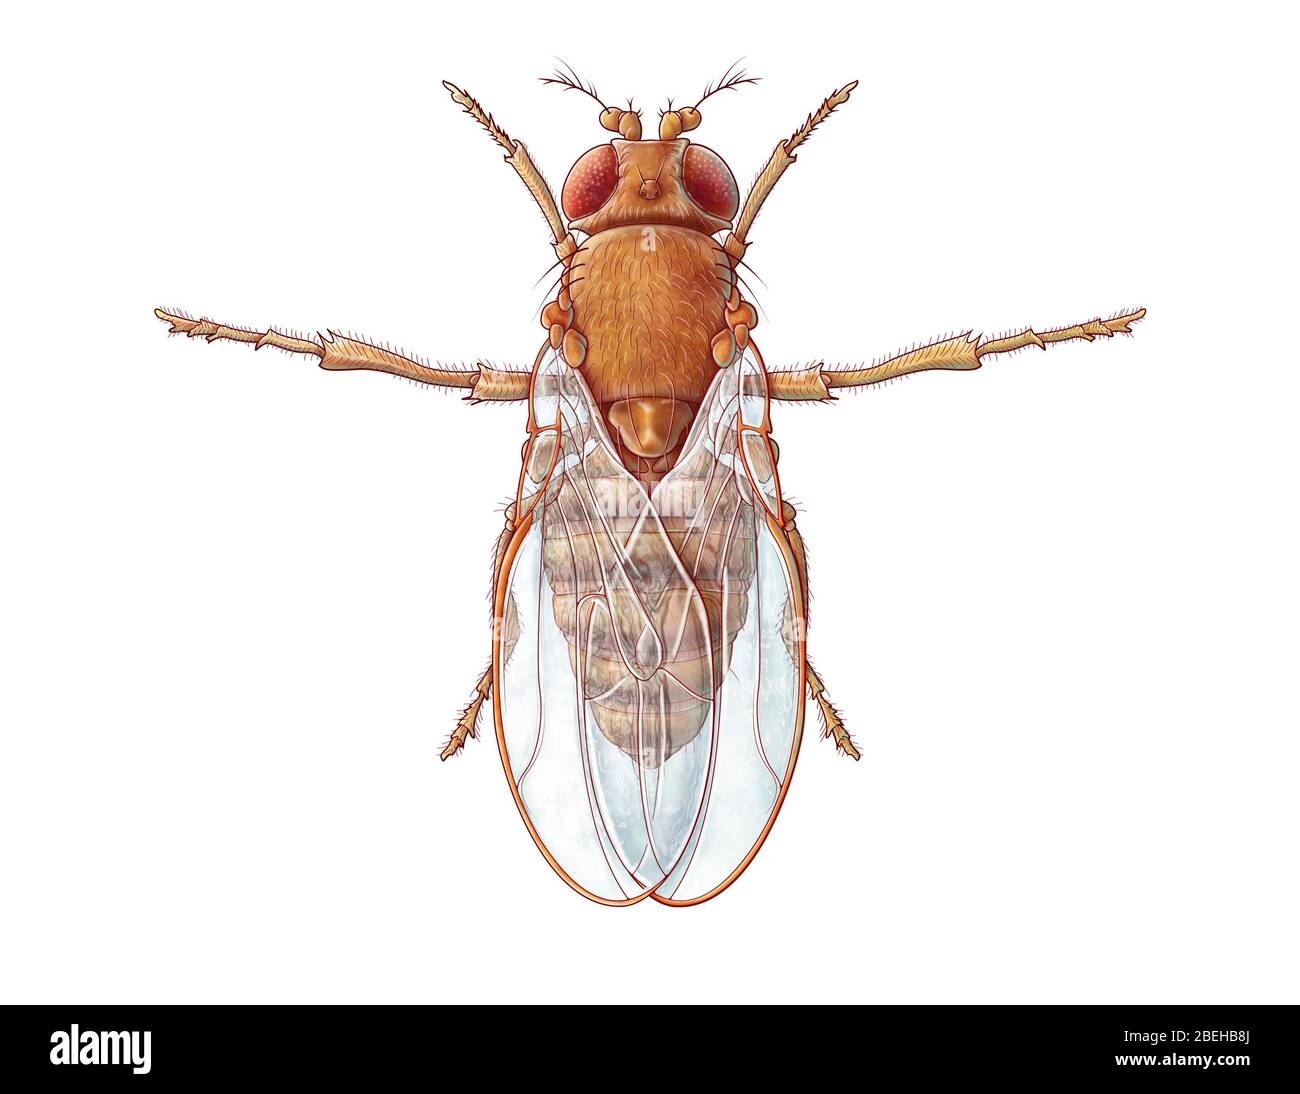 Ilustración de la mosca común de la fruta, también conocida como Drosophila melanogaster. Aunque las moscas de la fruta son plagas comunes en el hogar, también las usan los investigadores para estudiar genética, fisiología, patología y evolución. Foto de stock